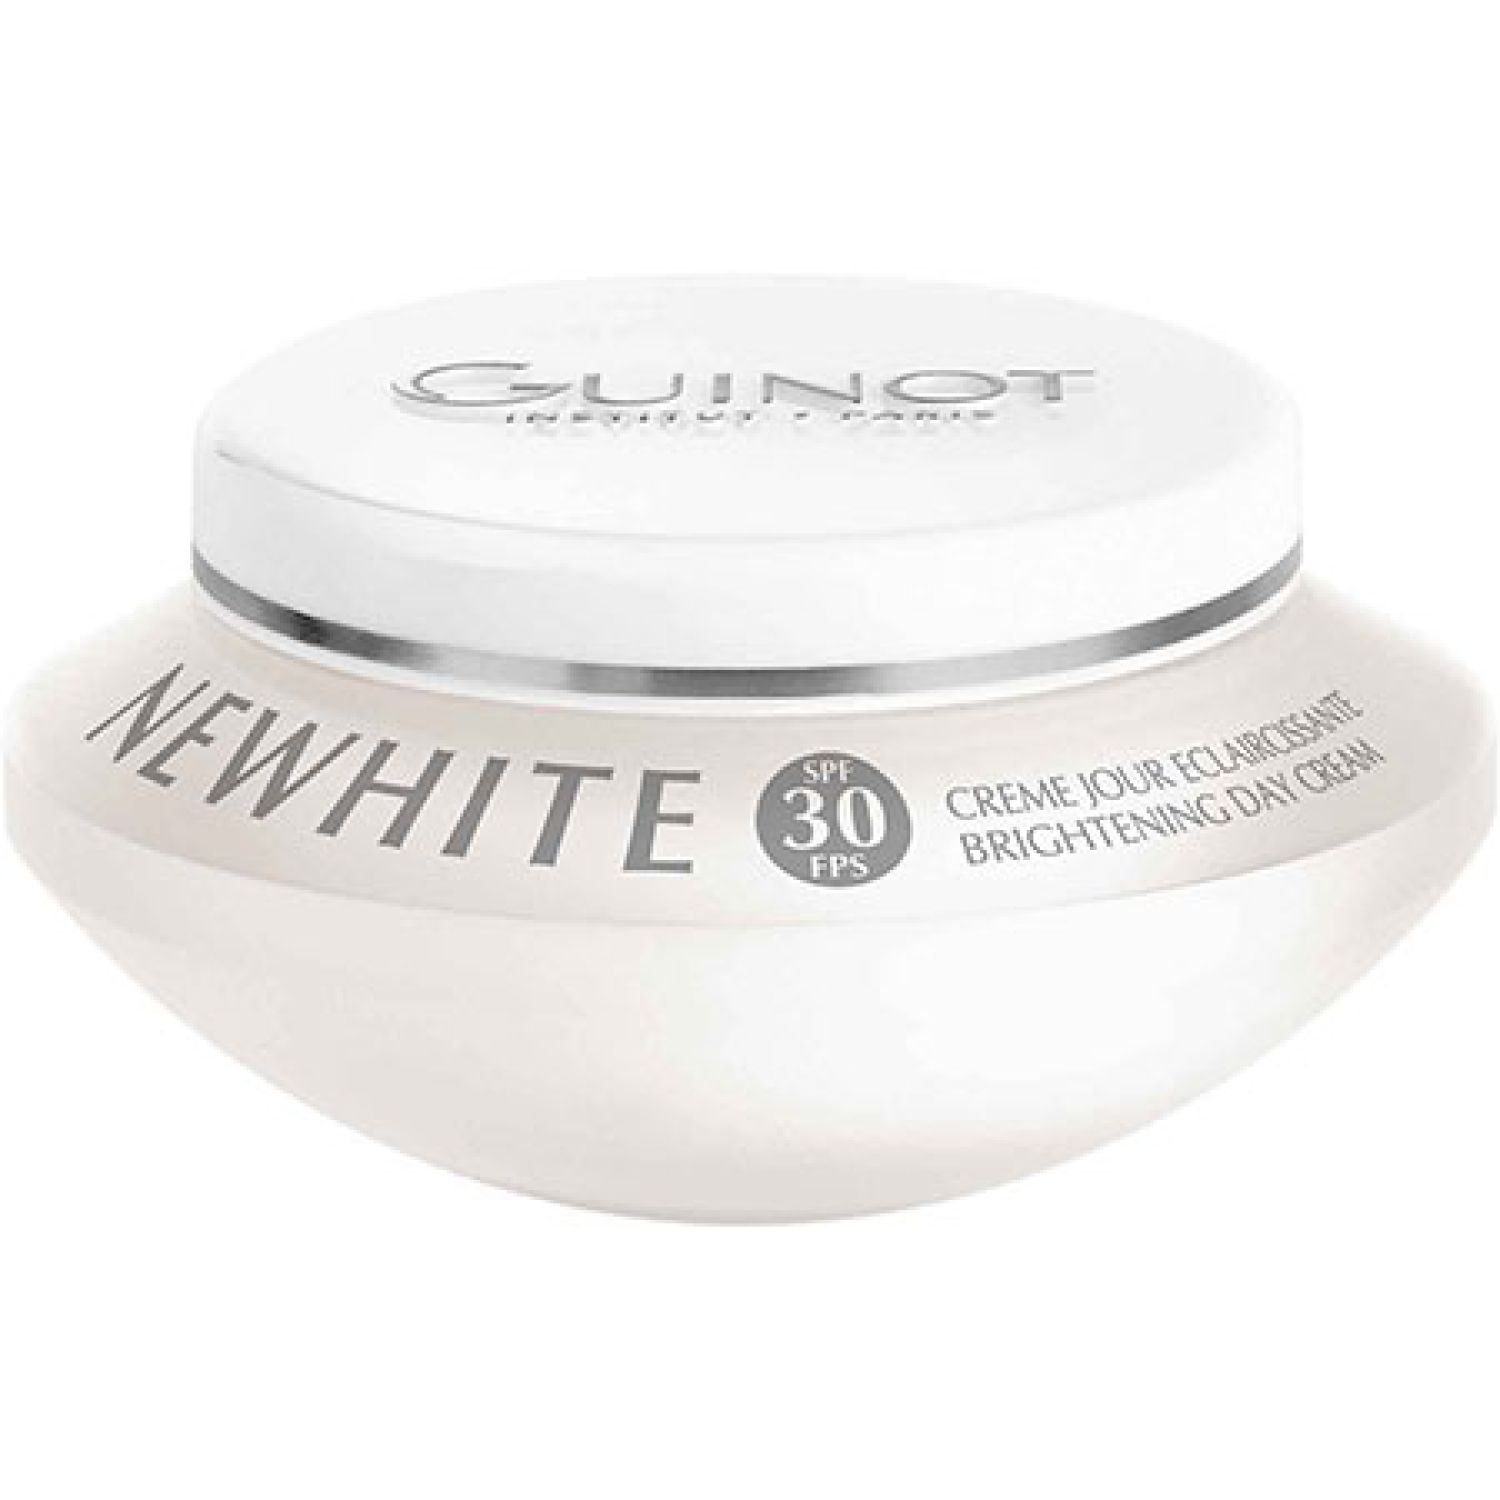 Guinot Newhite Day Cream